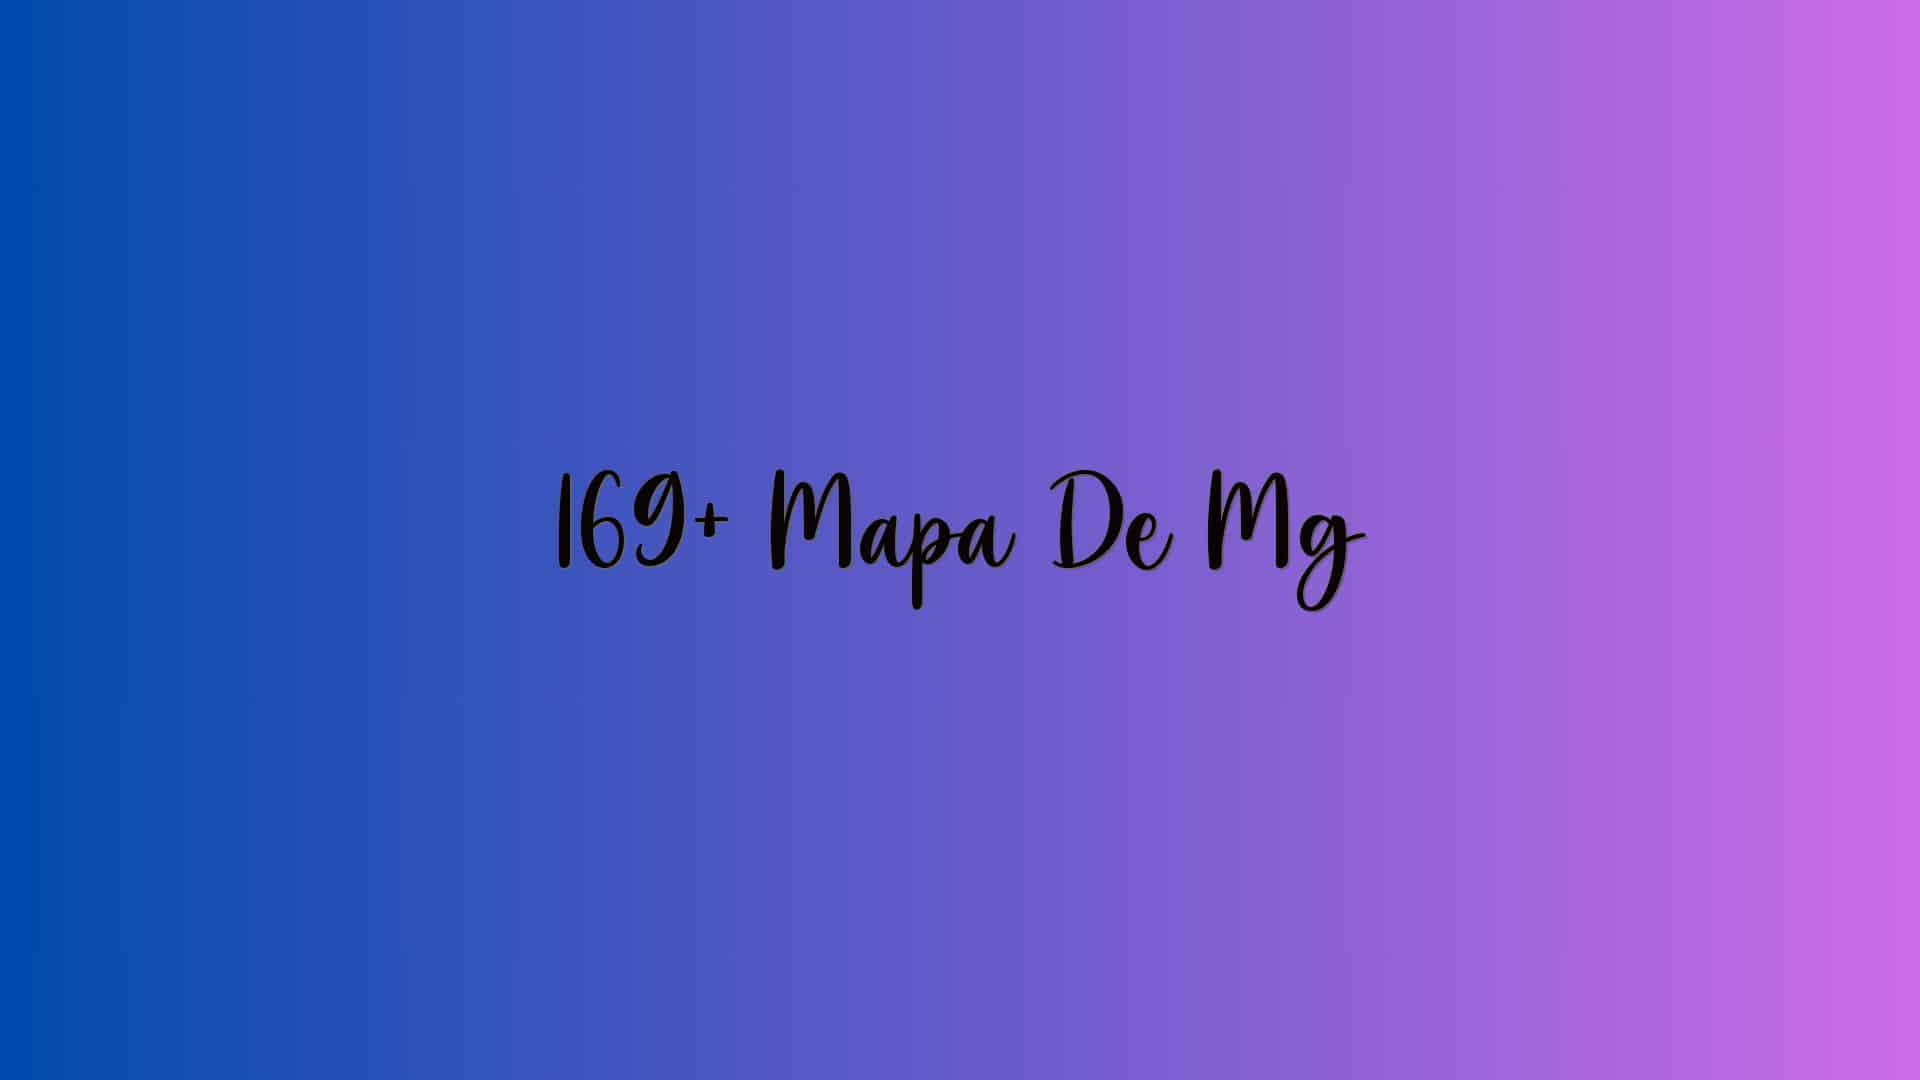 169+ Mapa De Mg